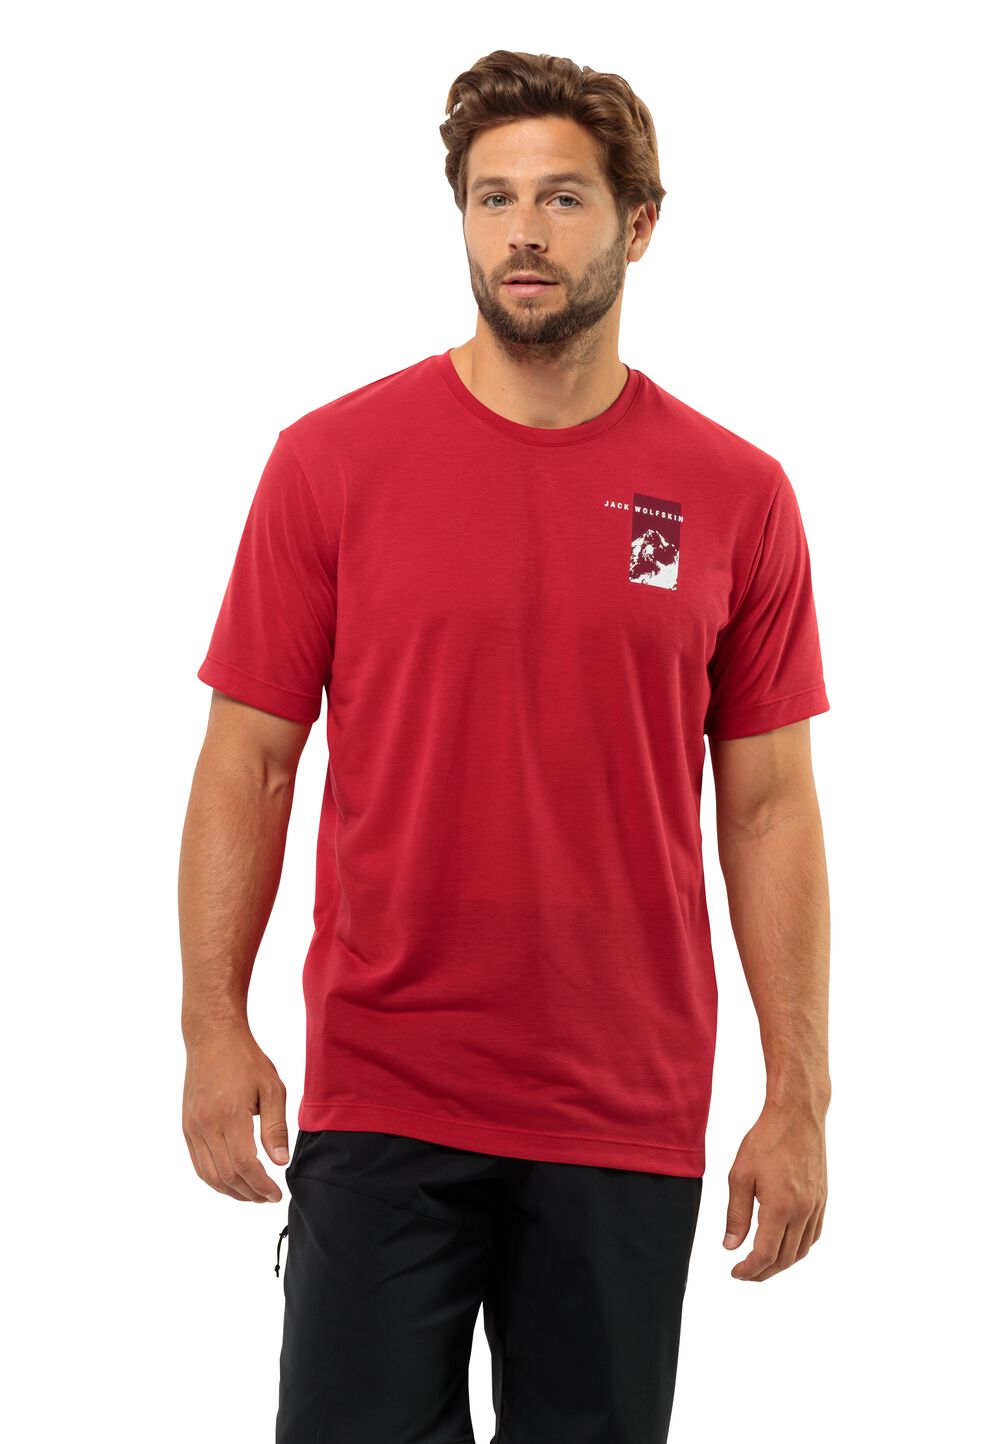 Jack Wolfskin Vonnan S S Graphic T-Shirt Men Functioneel shirt Heren 3XL rood red glow